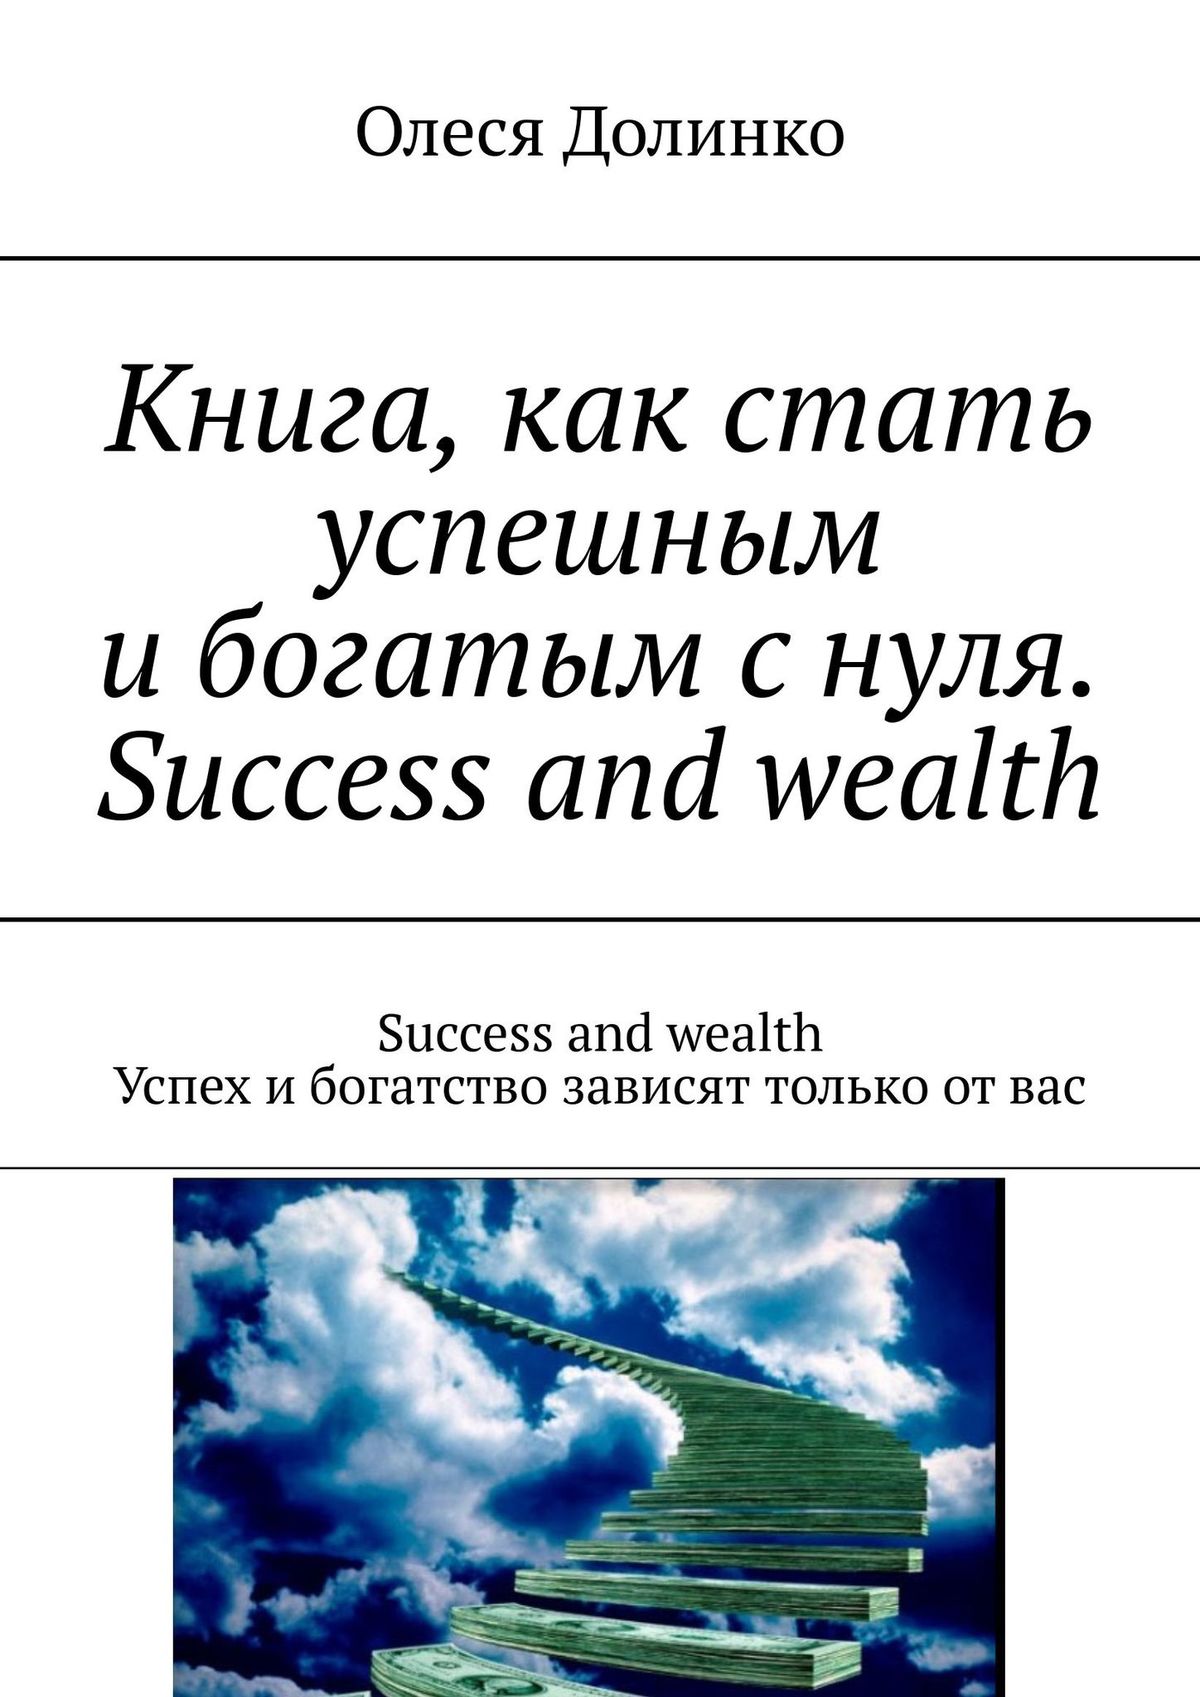 Книга, как стать успешным и богатым с нуля. Success and wealth. Success and  wealth Успех и богатство зависят только от вас, Олеся Долинко – скачать  книгу fb2, epub, pdf на ЛитРес